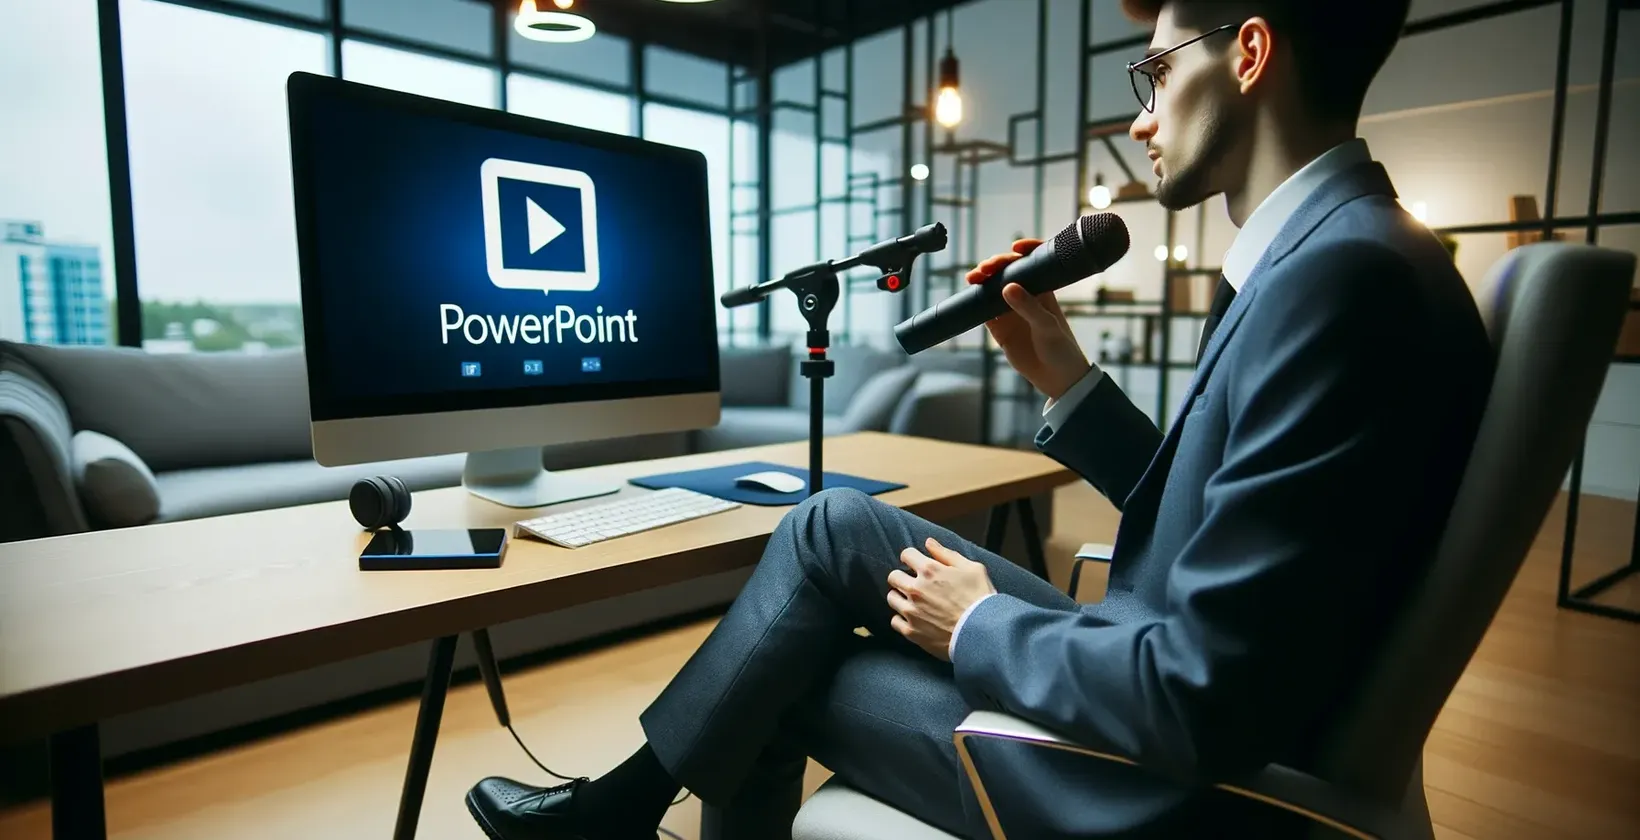 Homem no escritório com microfone olha para o monitor que apresenta o logótipo PowerPoint.